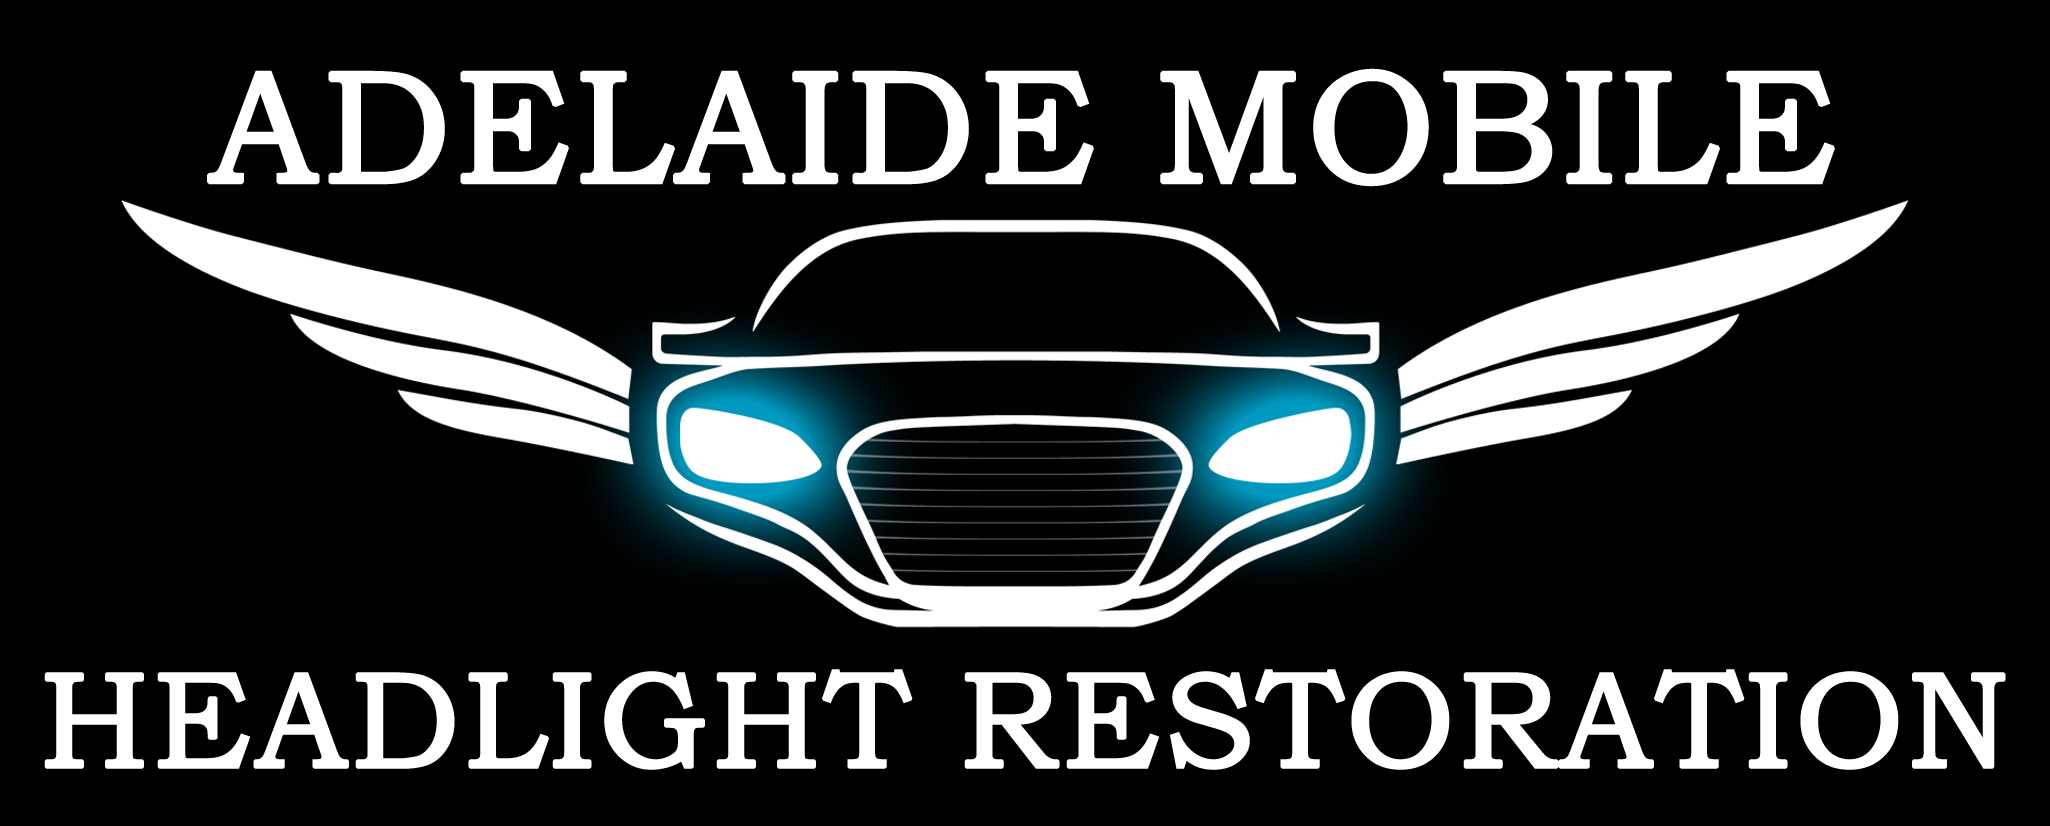 Adelaide Mobile Headlight Restoration